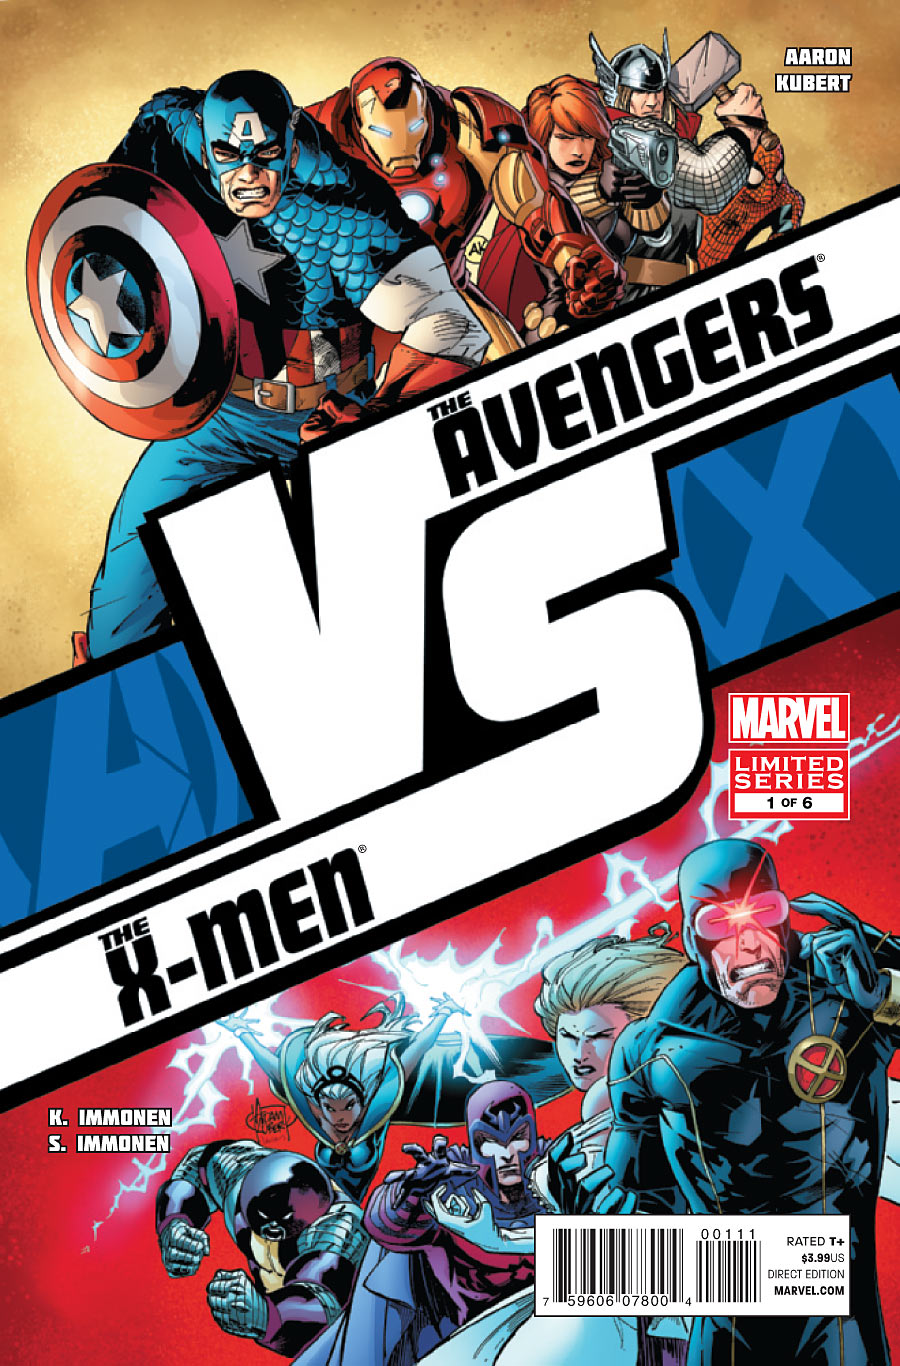 Preview de AvX Versus #1 - Avengers Vs X-Men